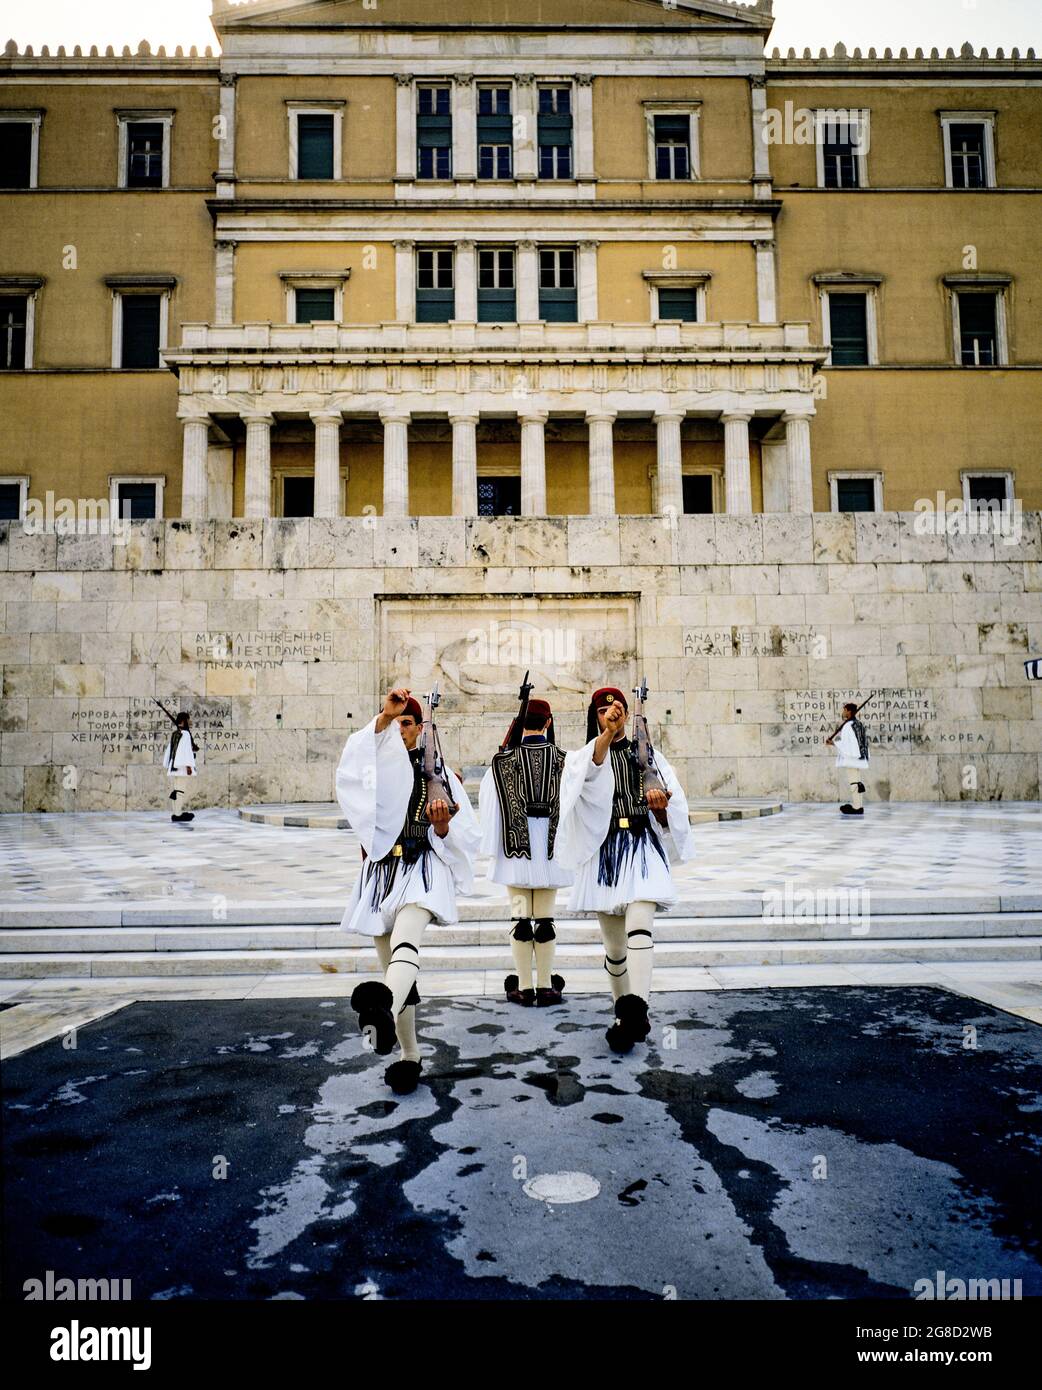 Atene, le guardie presidenziali di Evzones montano la guardia alla tomba del monumento soldato sconosciuto, edificio del Parlamento greco di Vouli, Grecia, Europa, Foto Stock